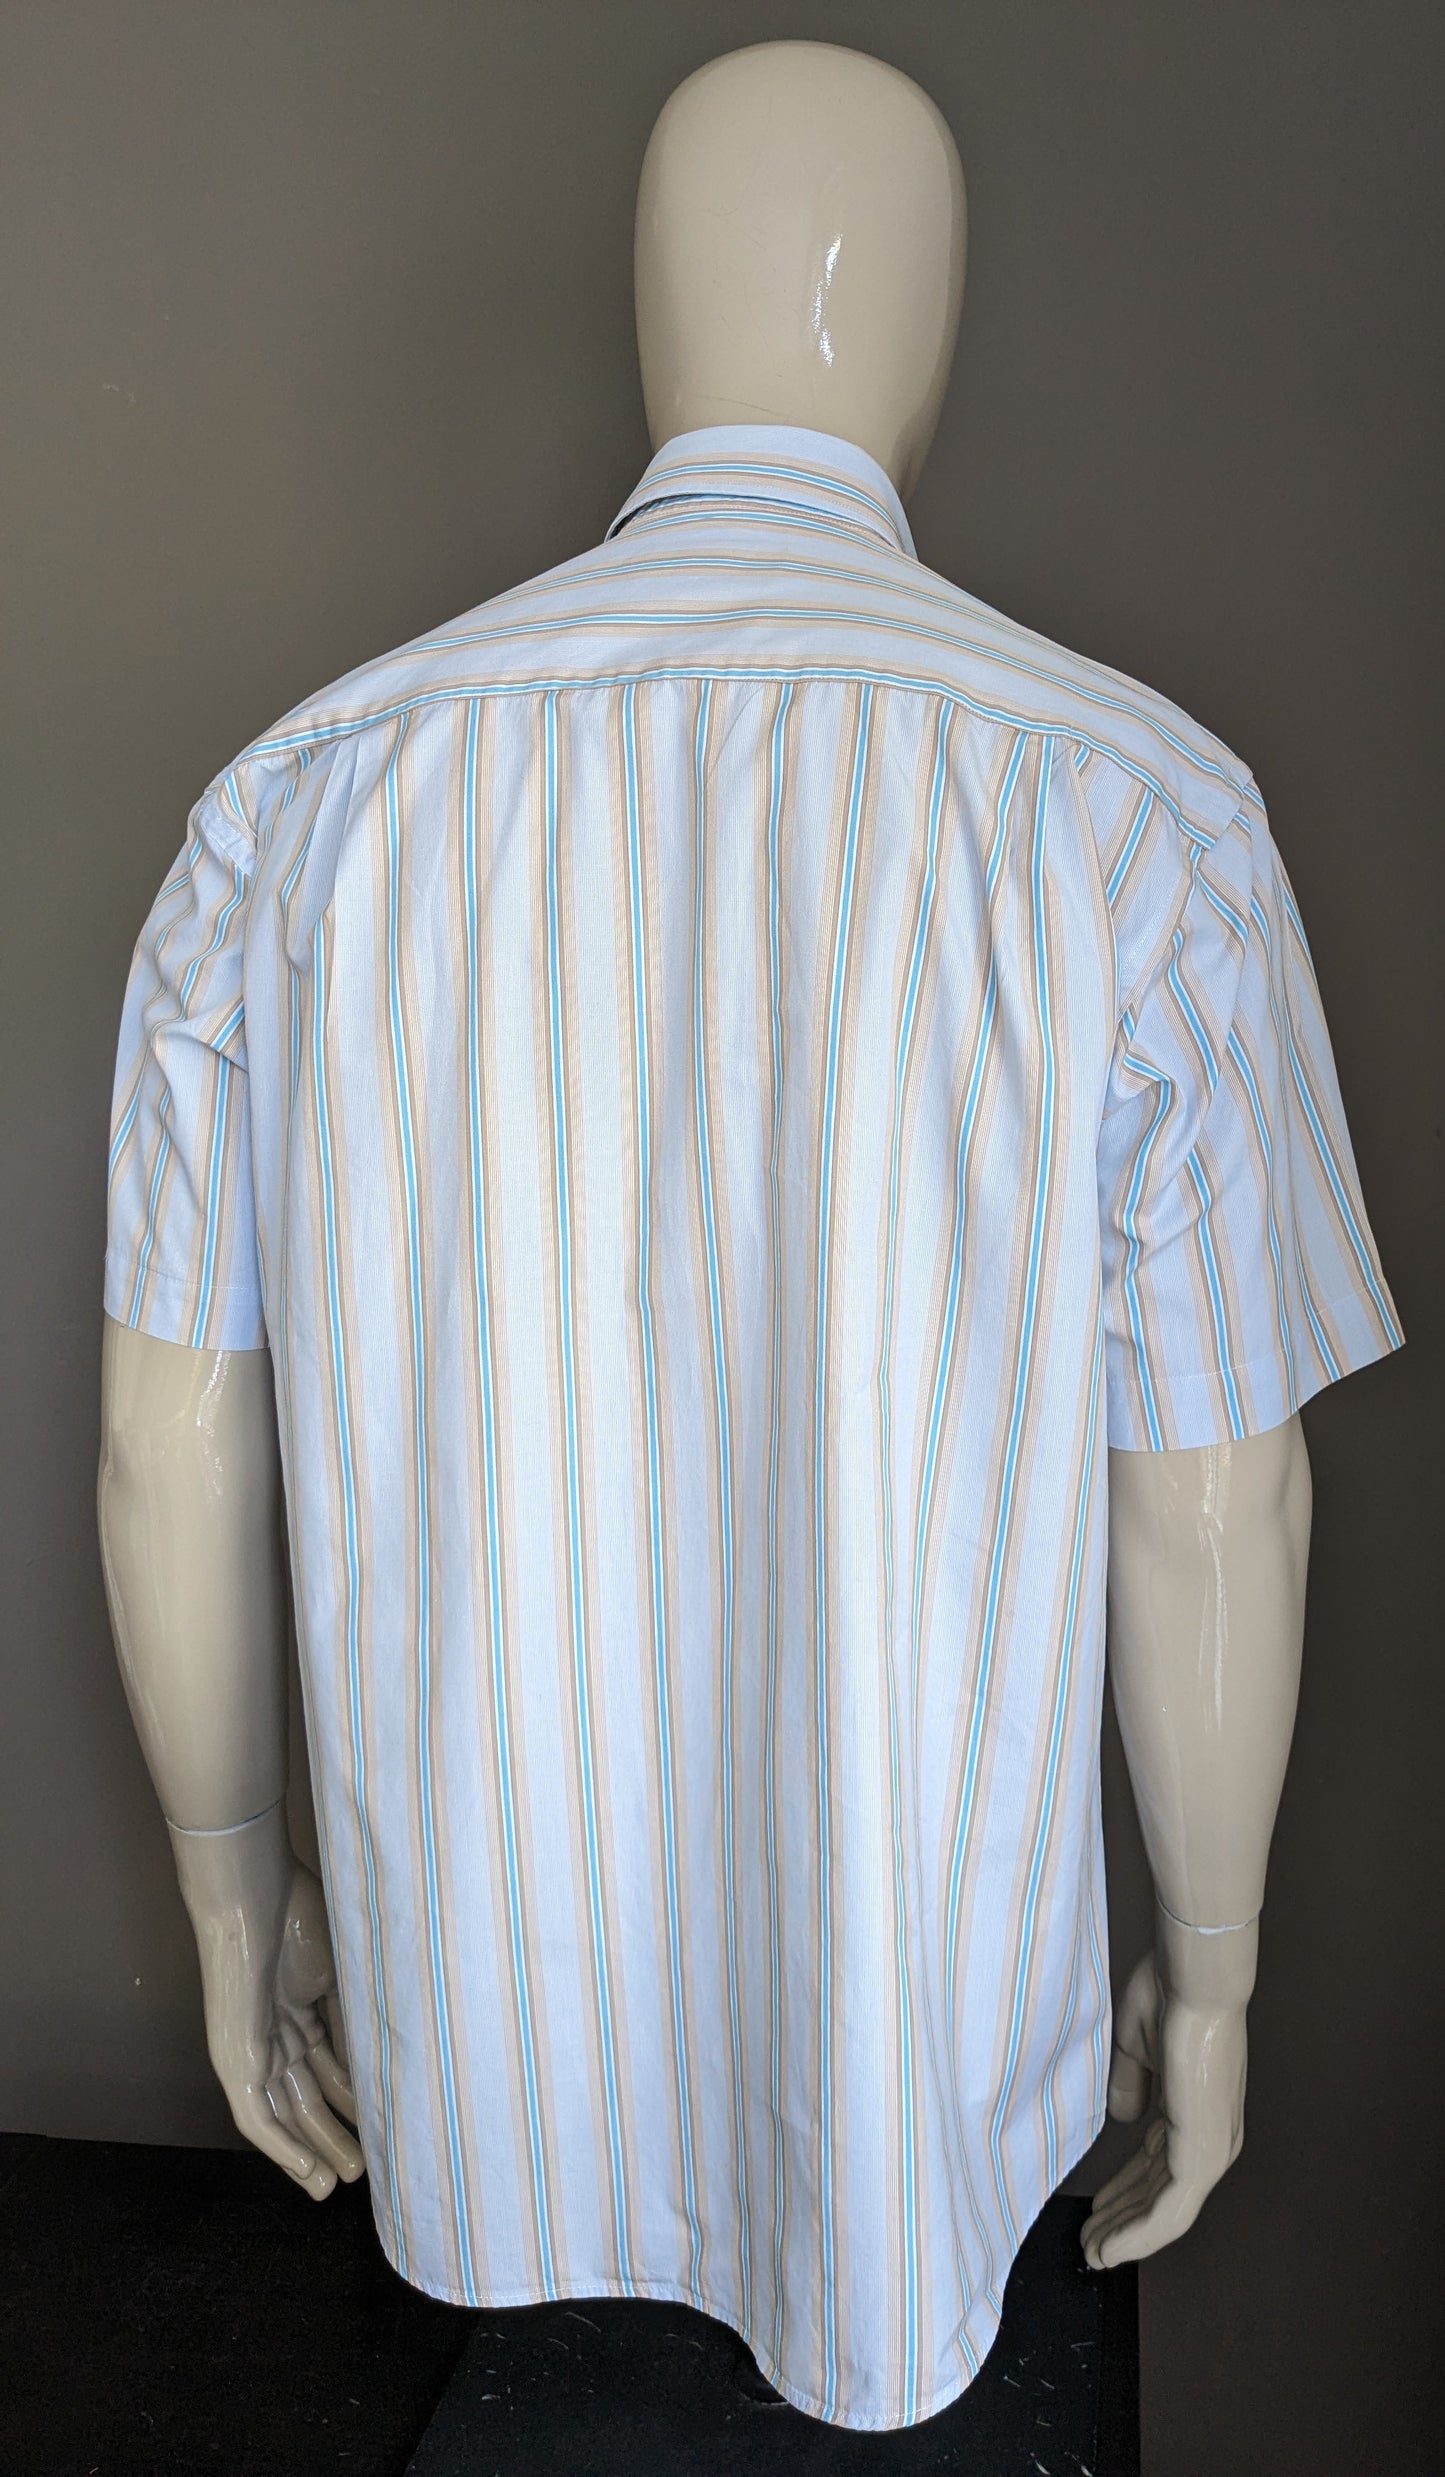 Adam Friday Shirt Kurzärmel. Blaubrauner weißer weiß gestreift. Größe xl.